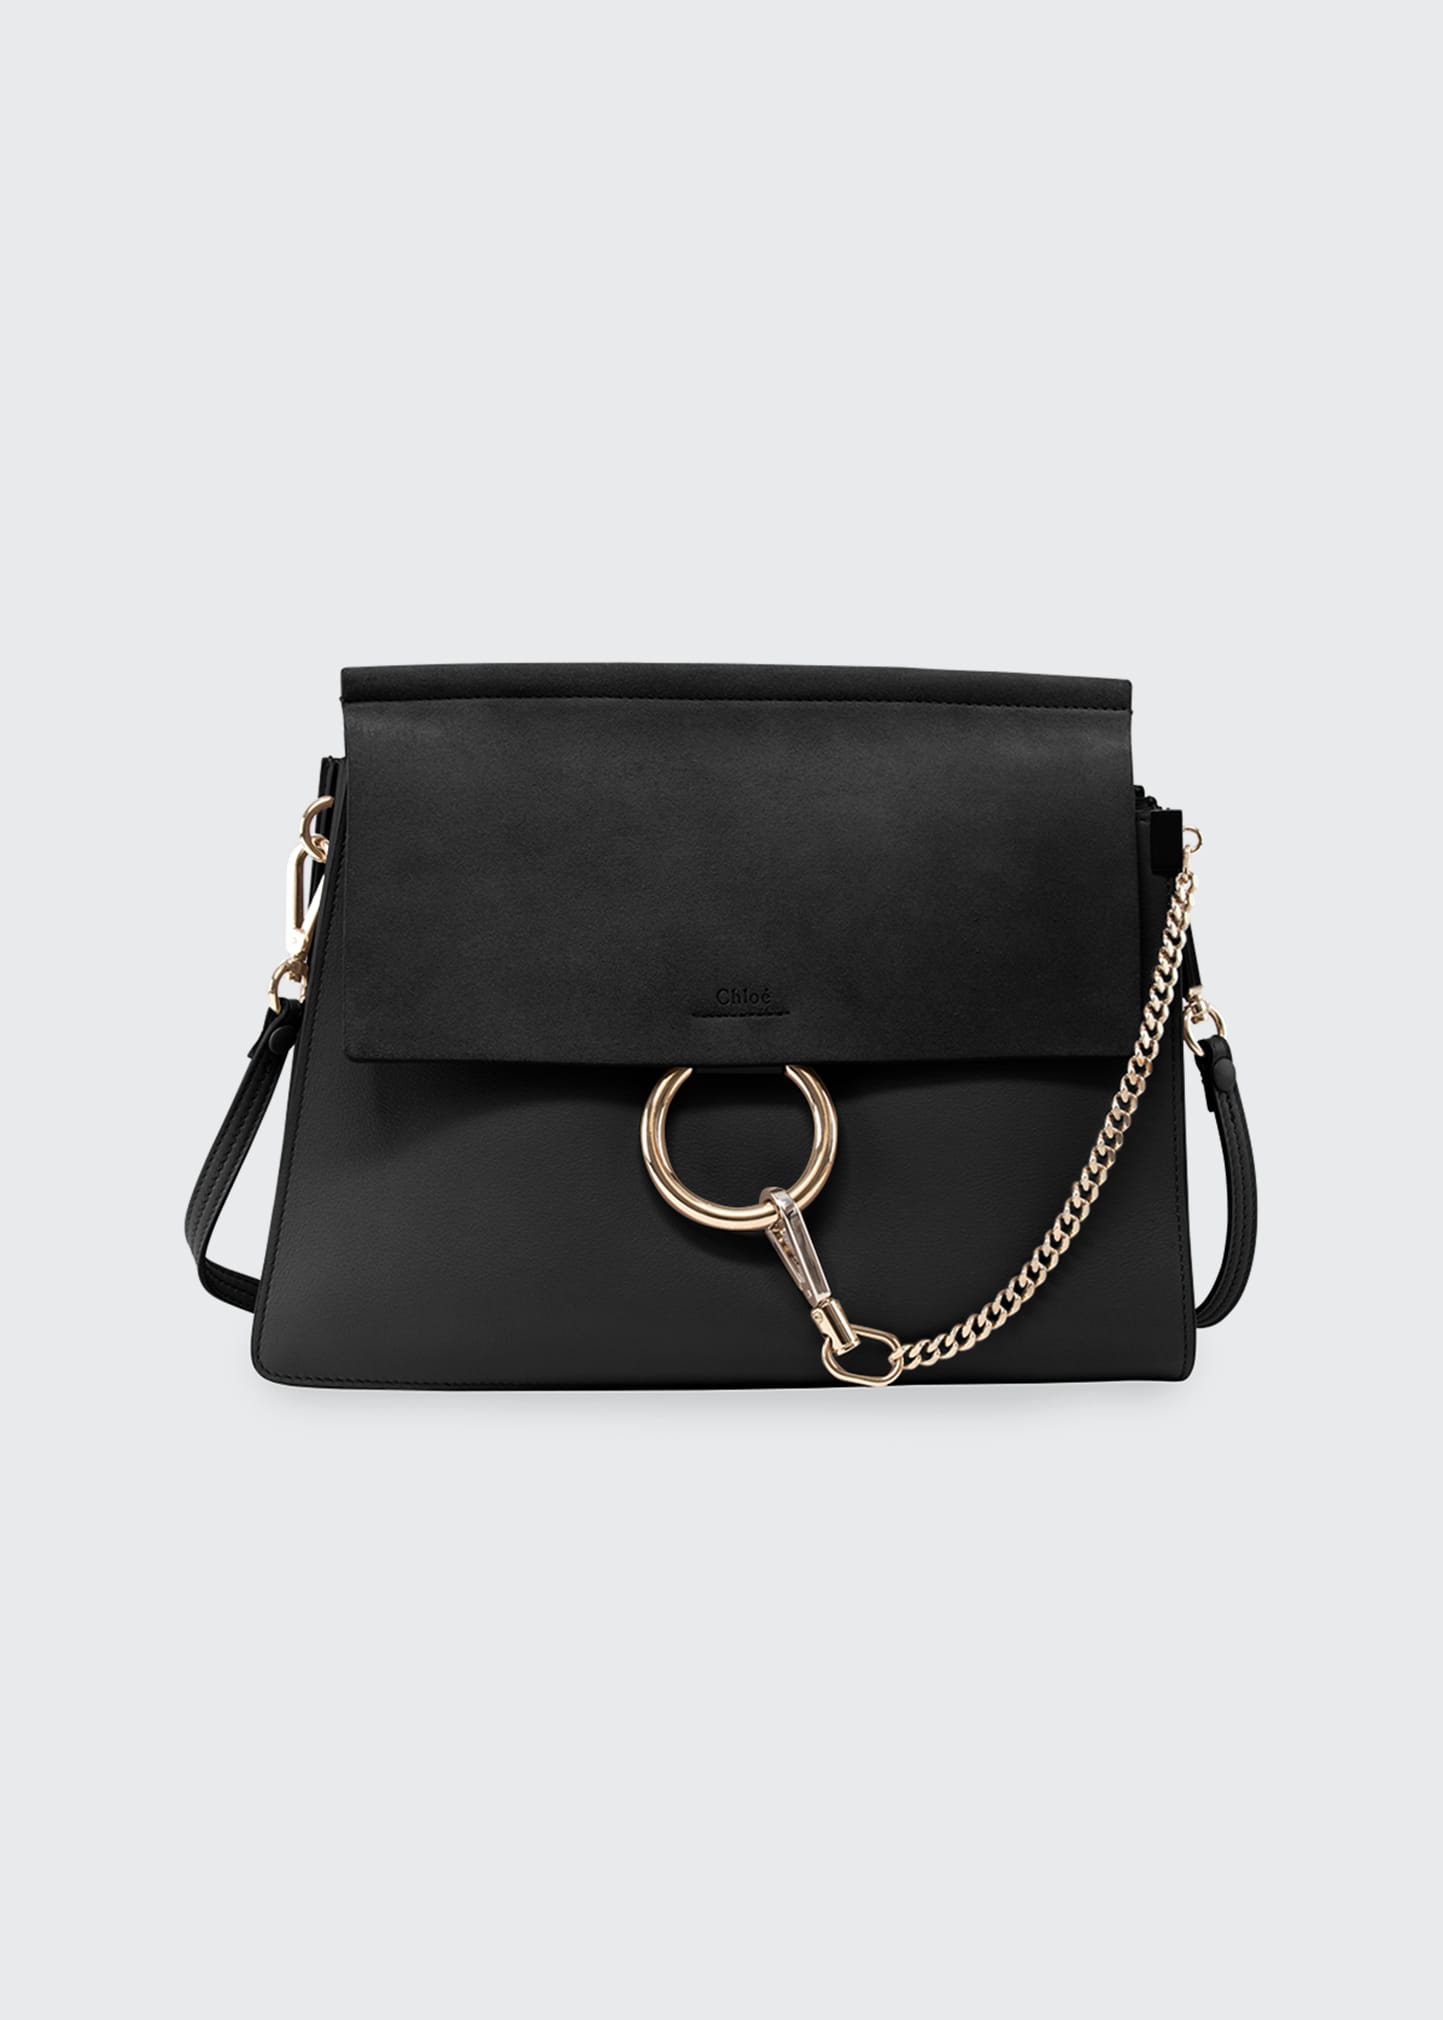 Chloe Faye Medium Leather/Suede Bag, Caramel